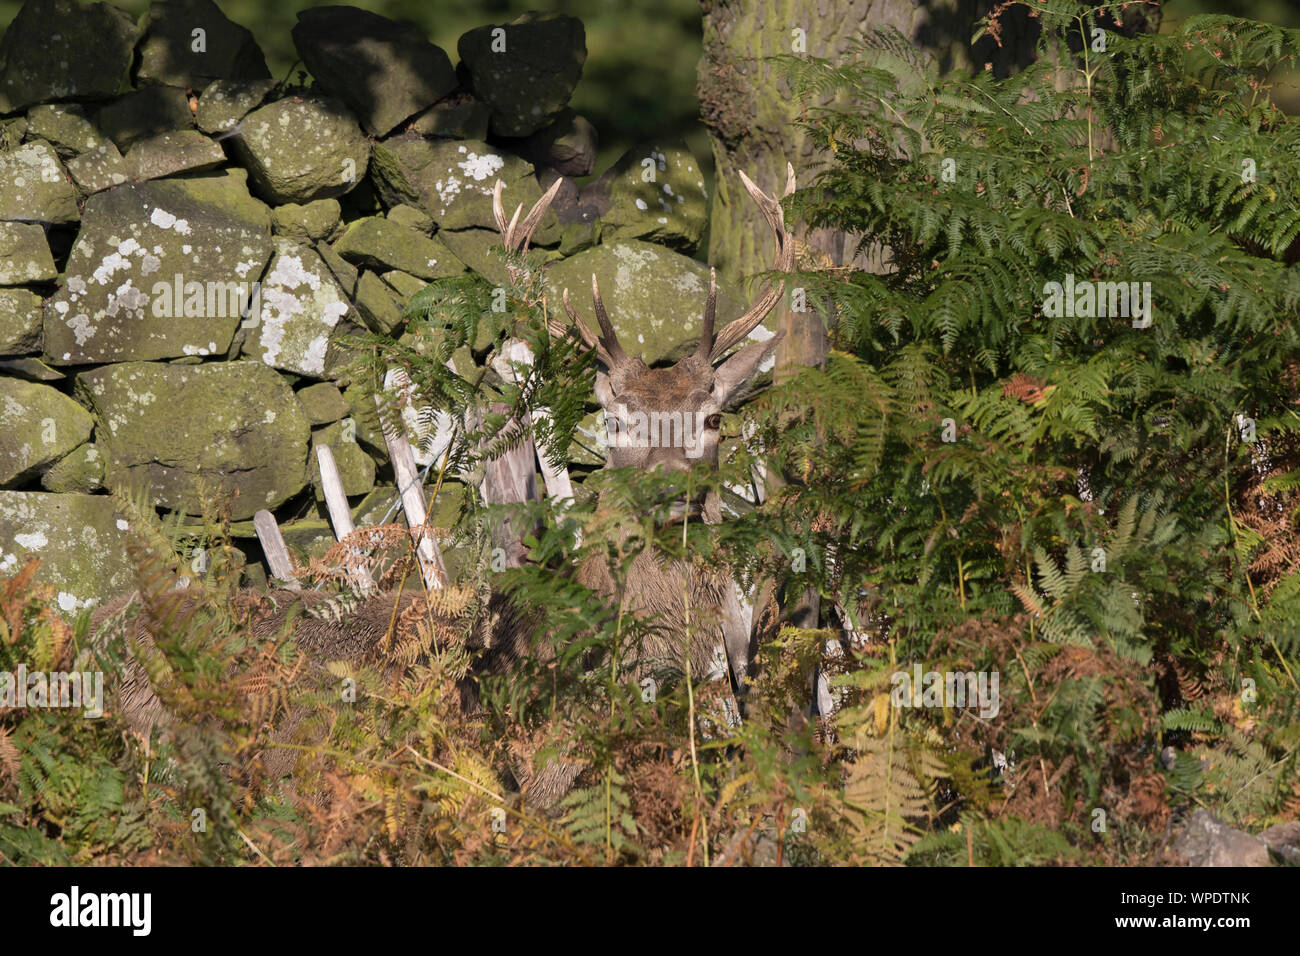 Cerf rouge sauvage du Royaume-Uni (Cervus elaphus) isolé à l'extérieur, camouflé se cachant entre crochets, sous le soleil d'automne. Cerf rouge caché. Banque D'Images